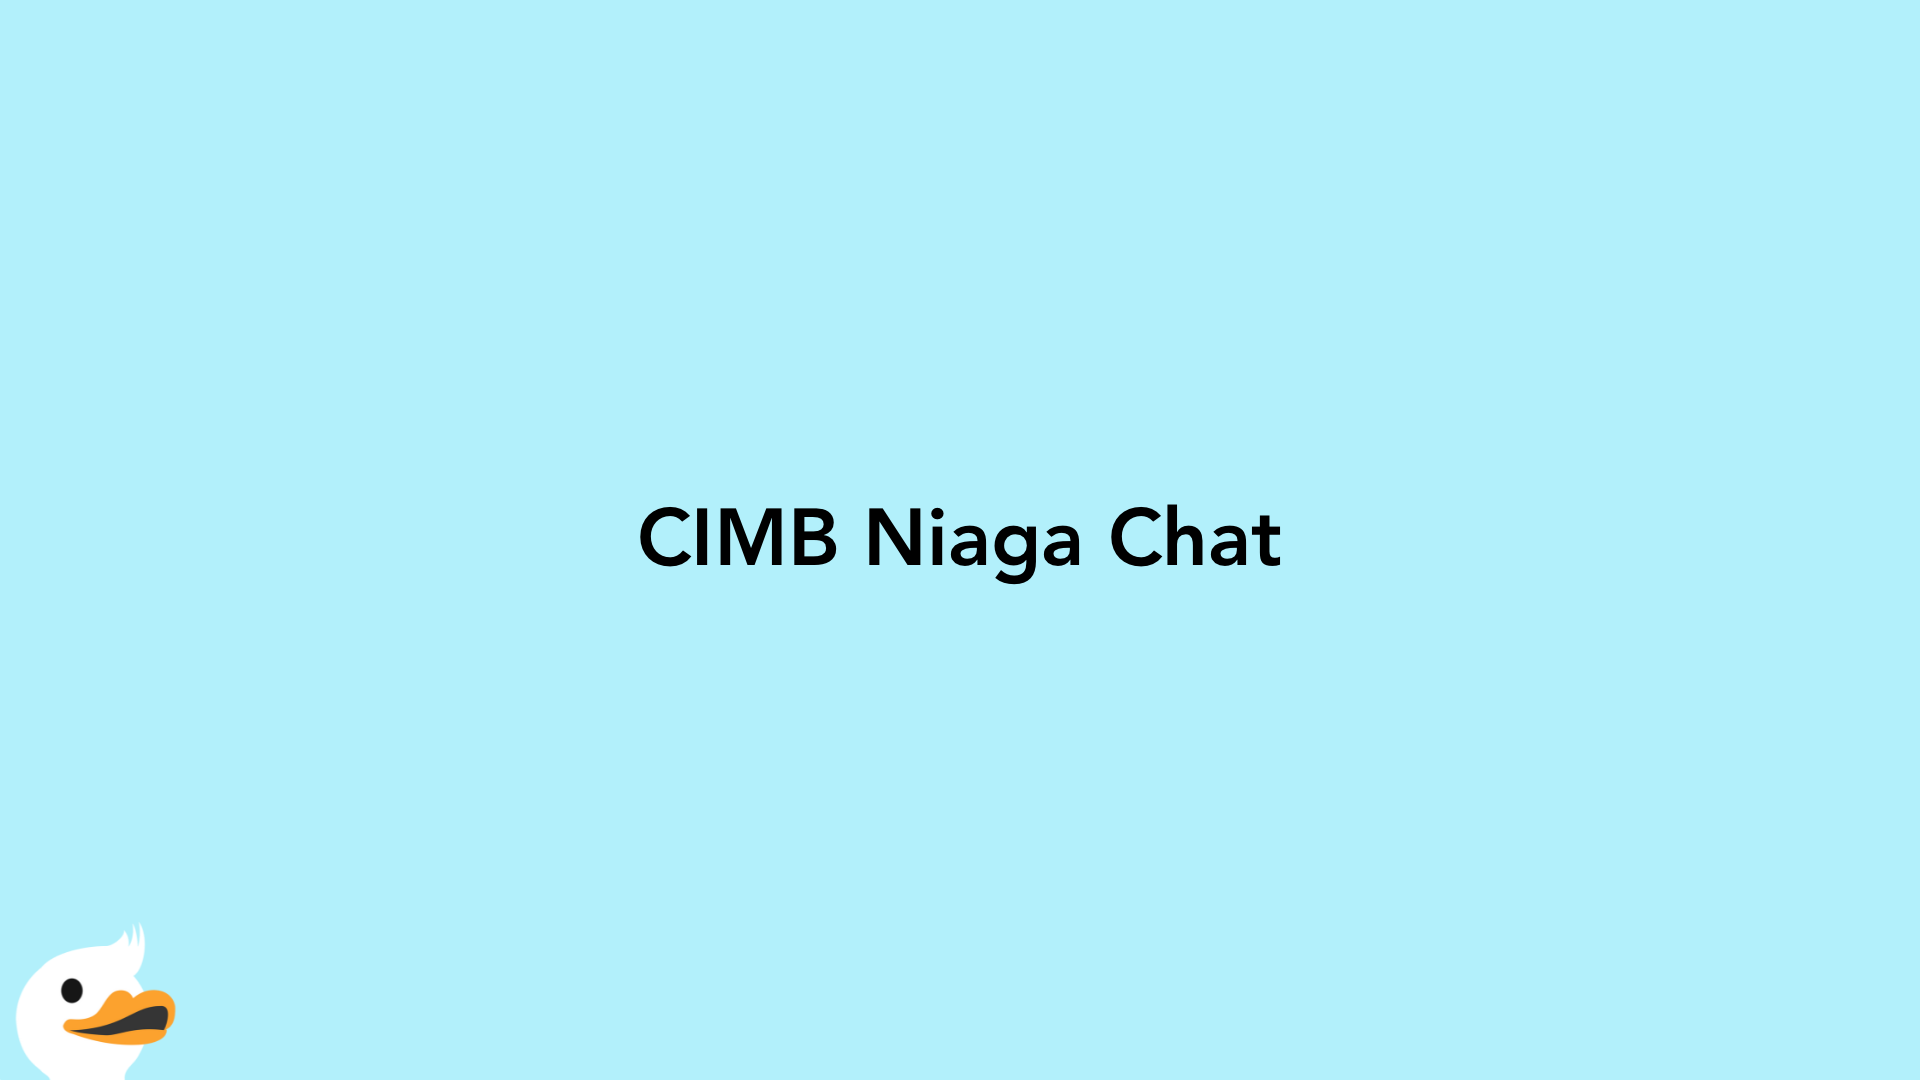 CIMB Niaga Chat